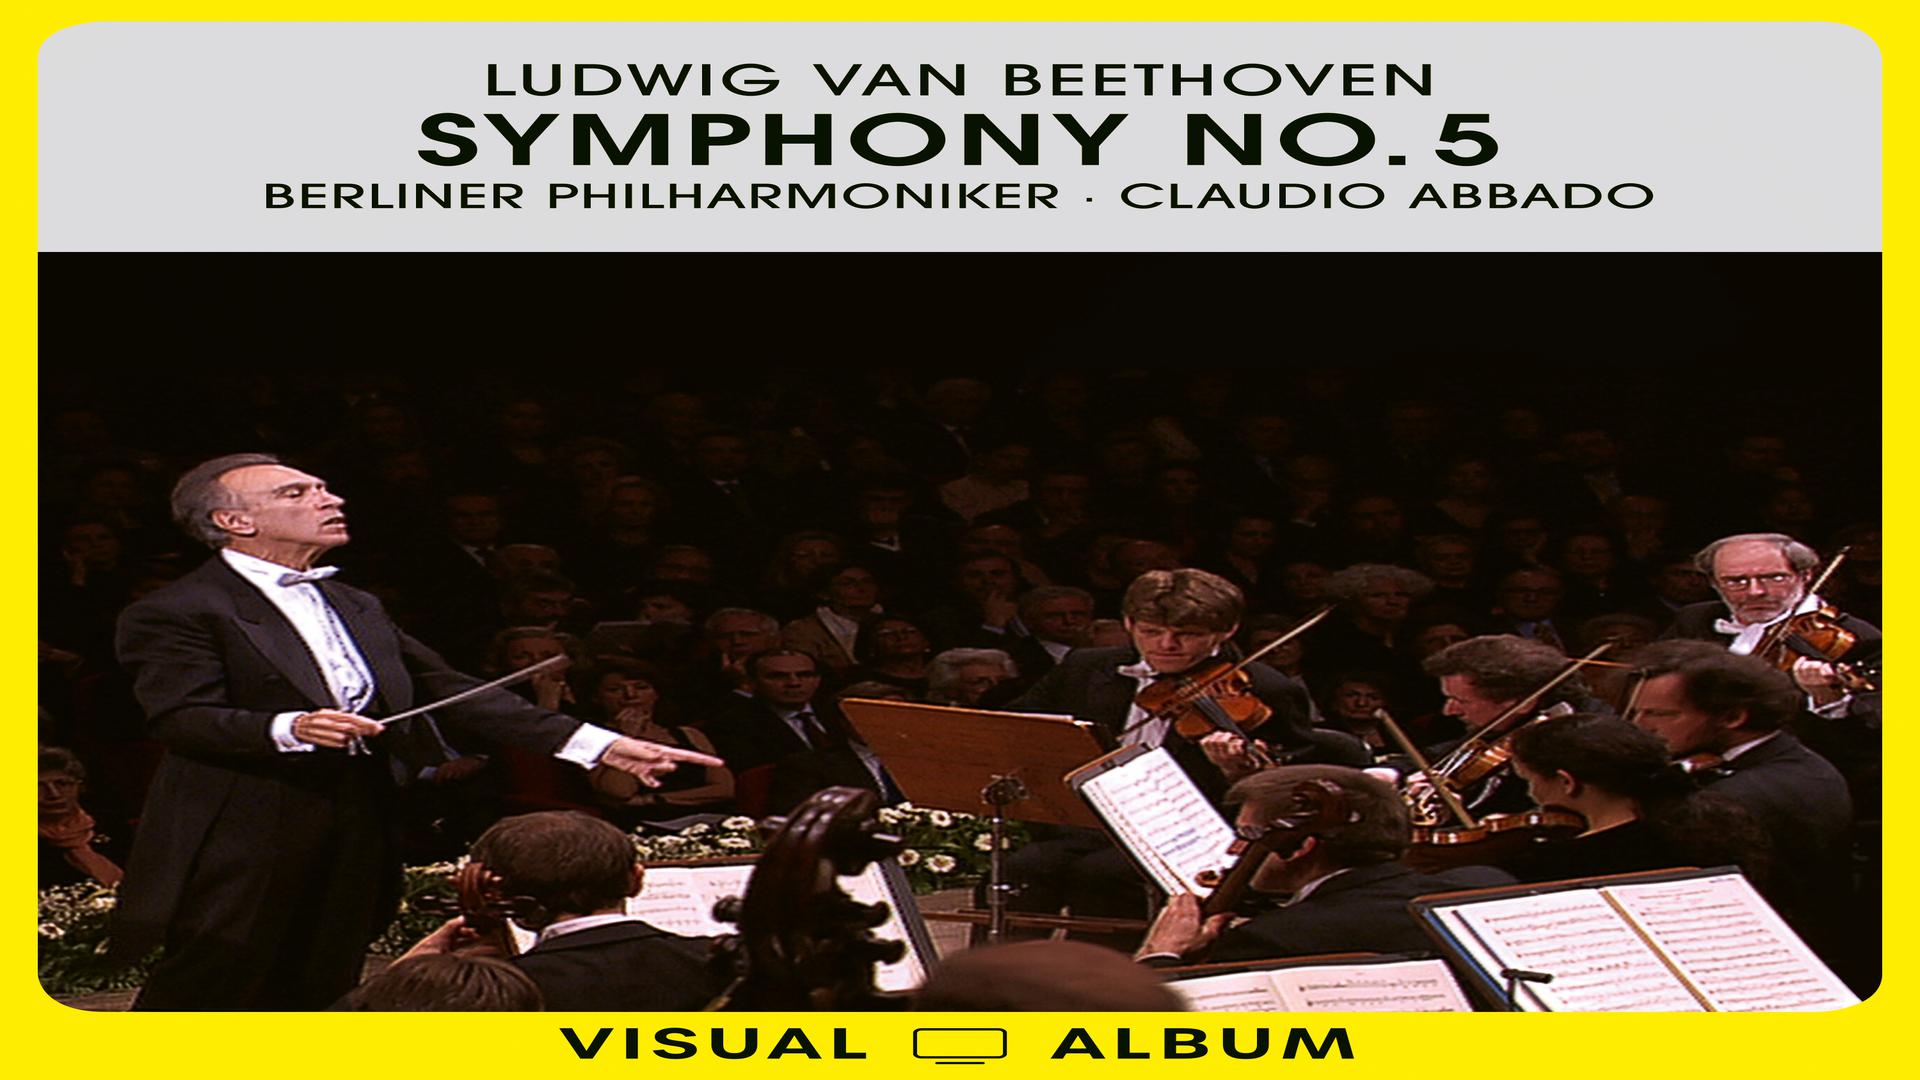 Berliner Philharmoniker - Beethoven: Symphony No. 5 in C Minor, Op. 67 - II. Andante con moto (Live at Accademia Nazionale di Santa Cecilia, Rome / 2001)